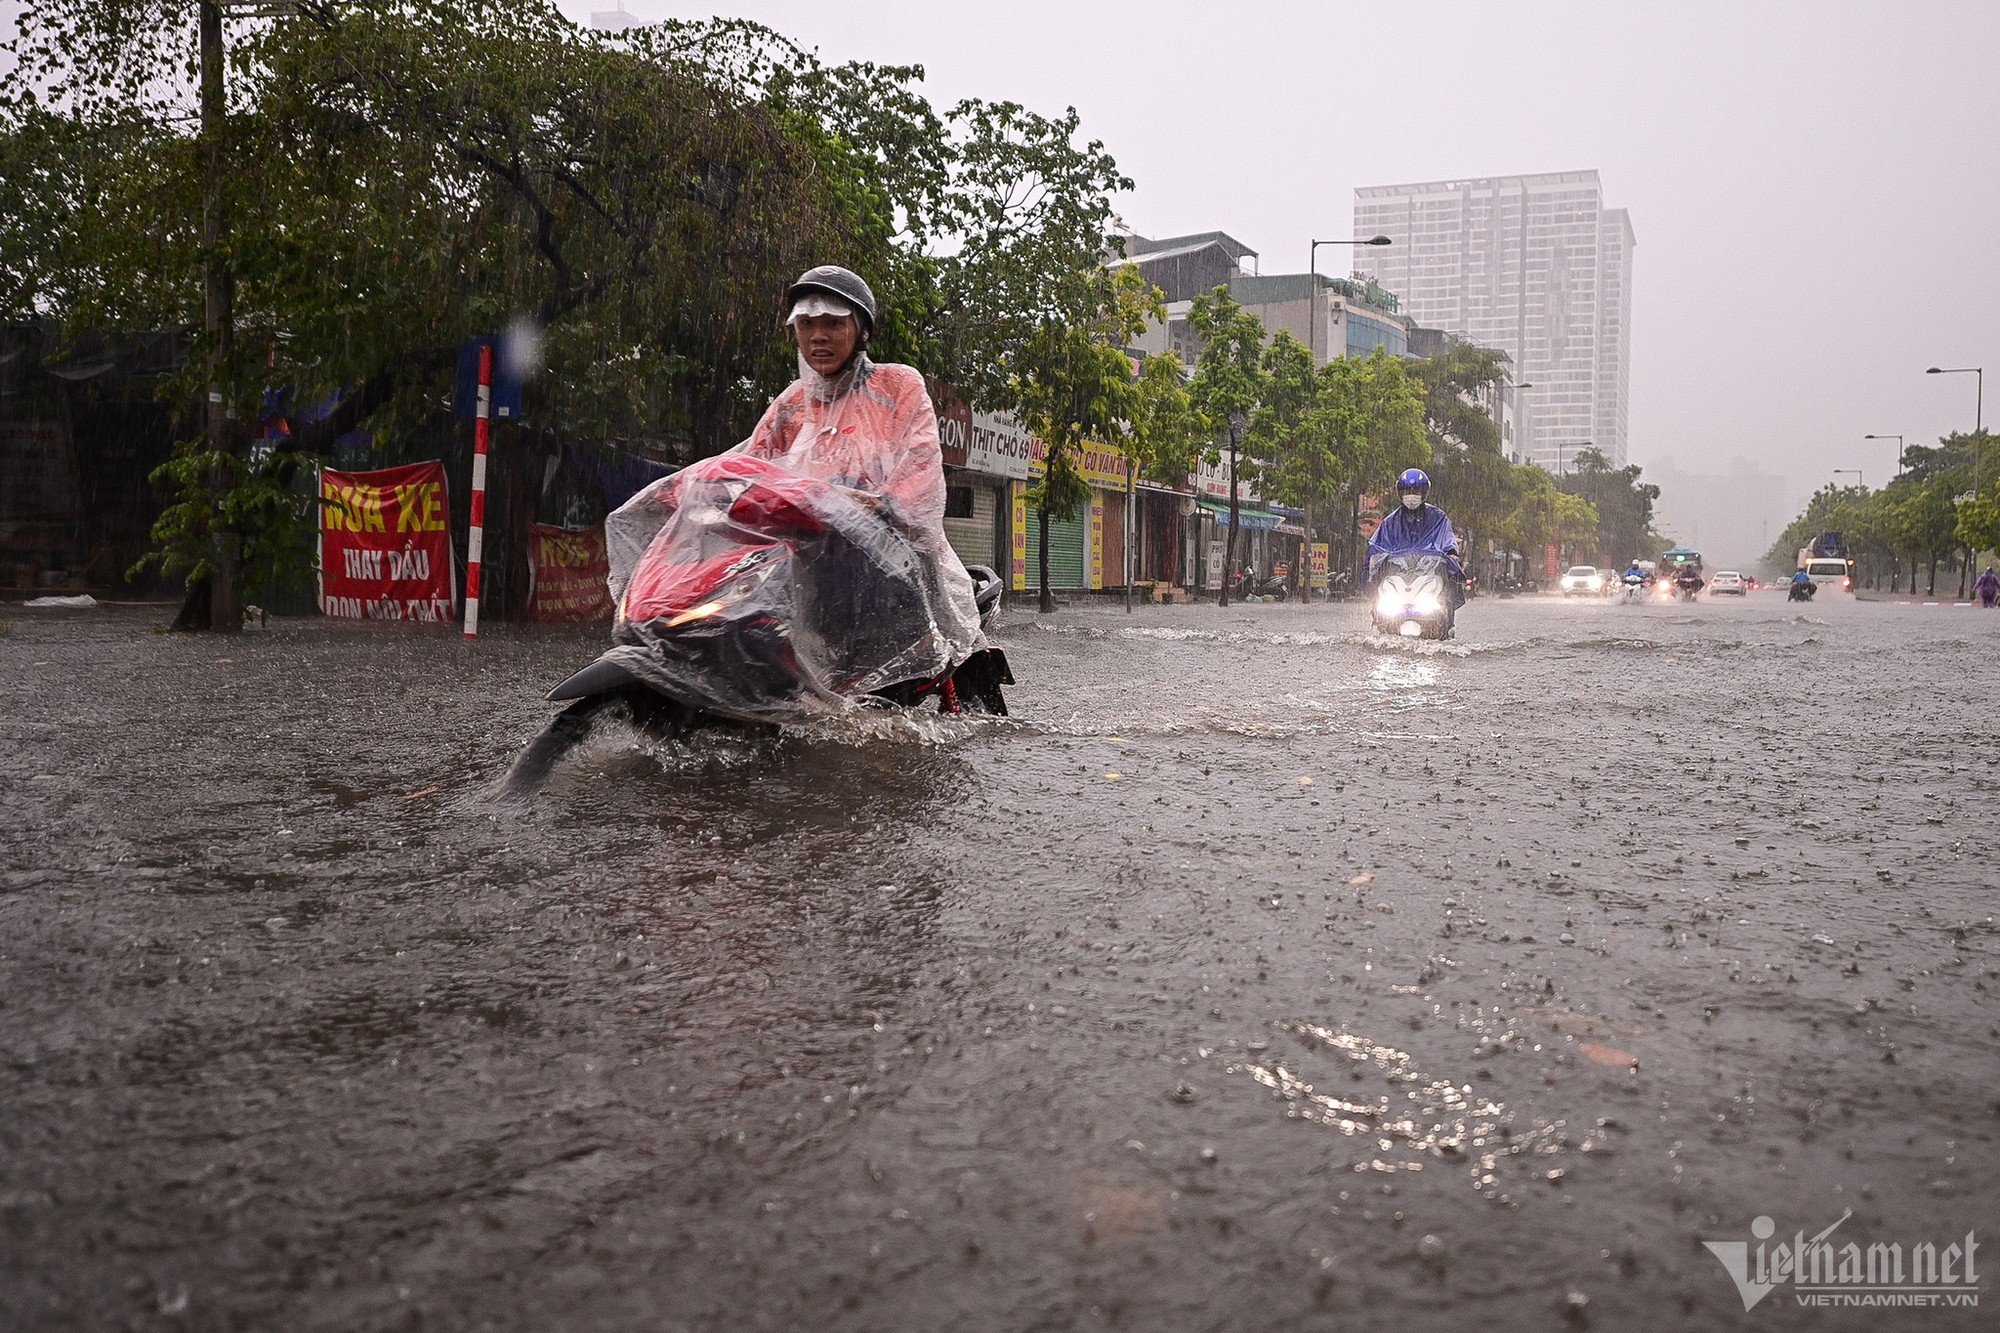 Hà Nội mưa lớn, người đi xe máy chới với giữa dòng nước ngập - Ảnh 2.